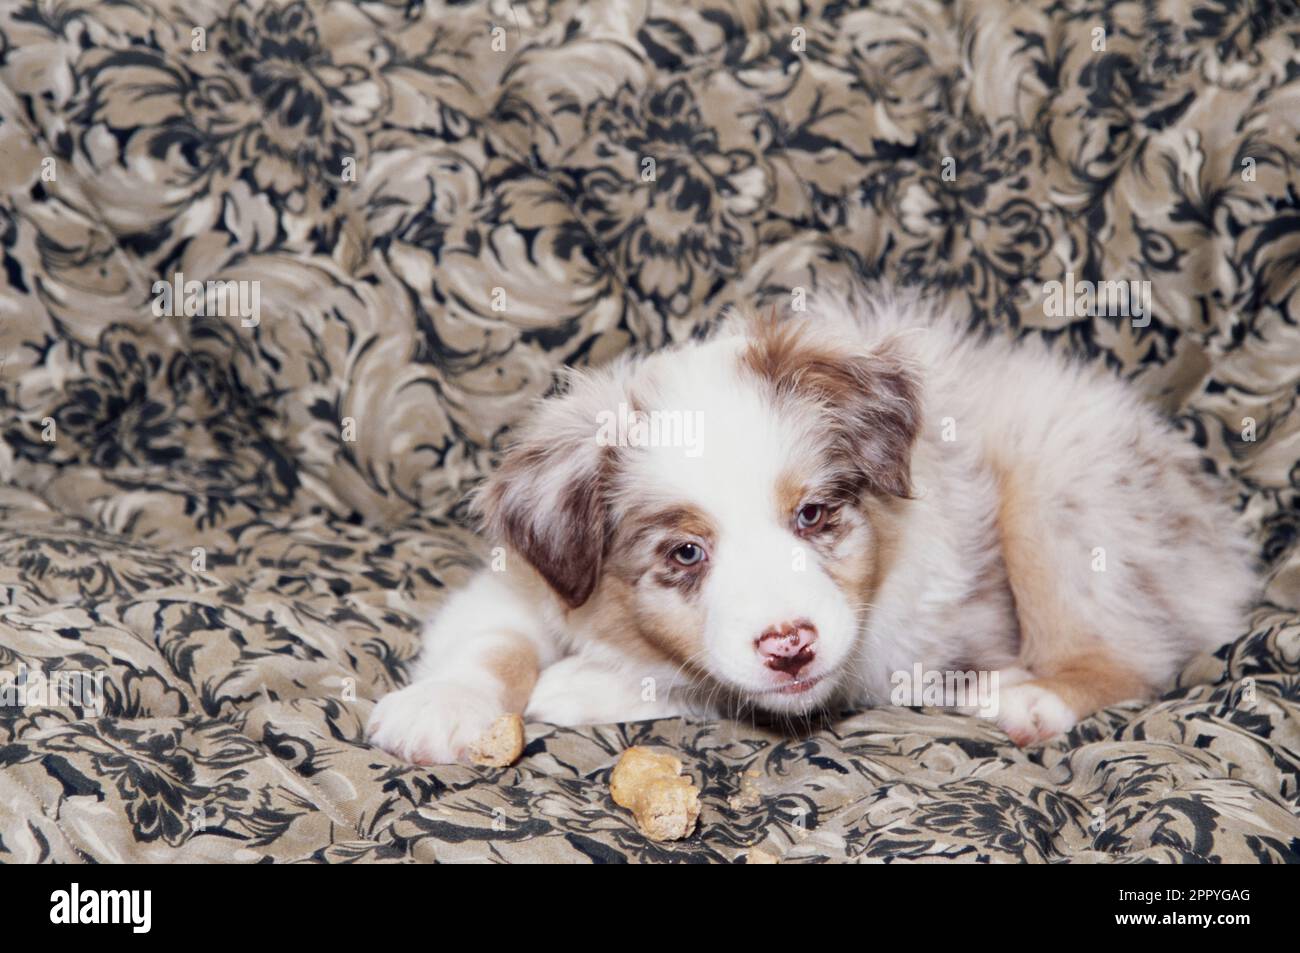 Cute Australian Shepherd puppy sitting on beige patterned blanket chewing on treat Stock Photo